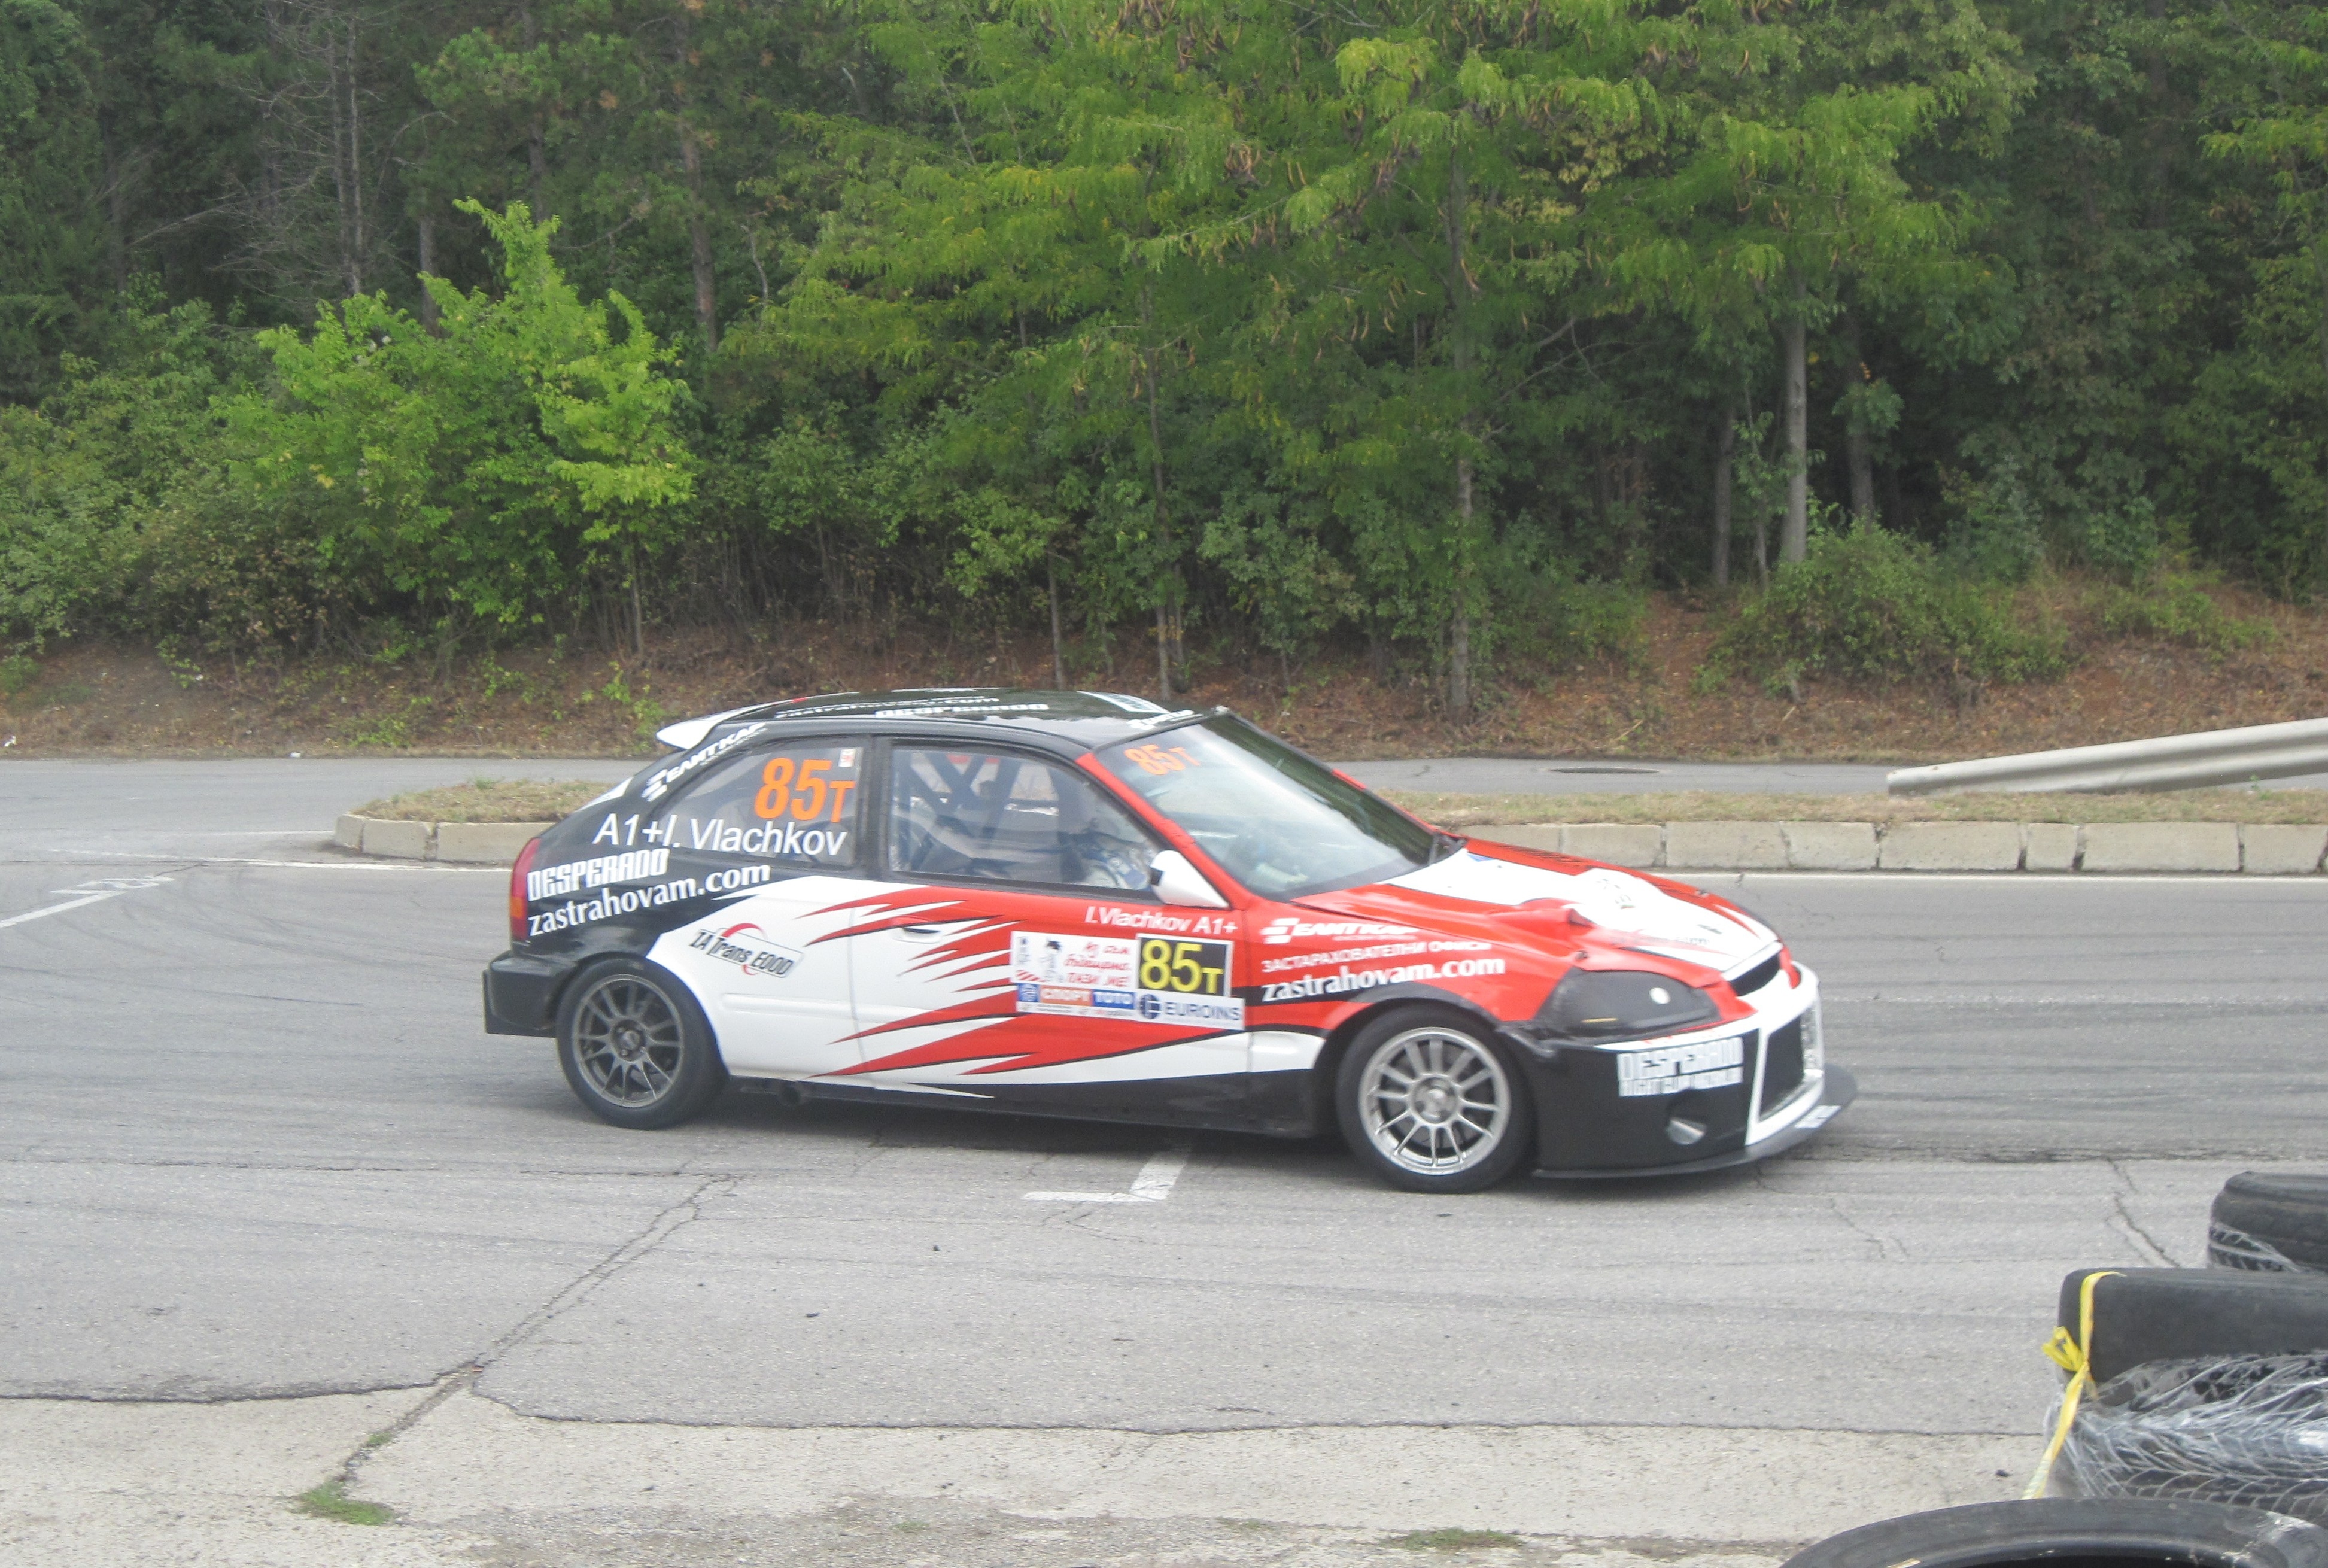 Иван Влъчков с Honda Civic спечели състезанието в серия Туринг